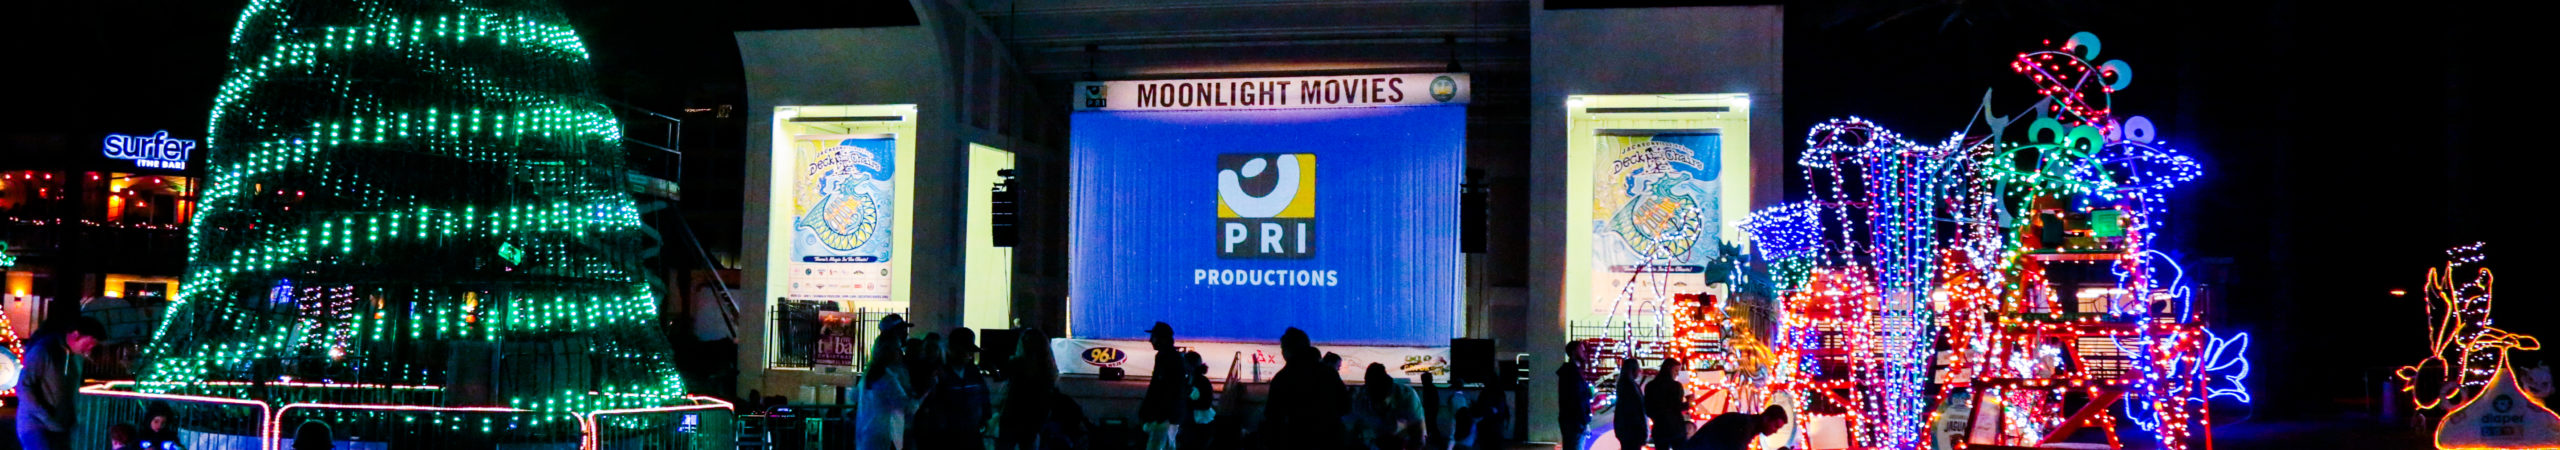 Moonlight Movies – Prancer